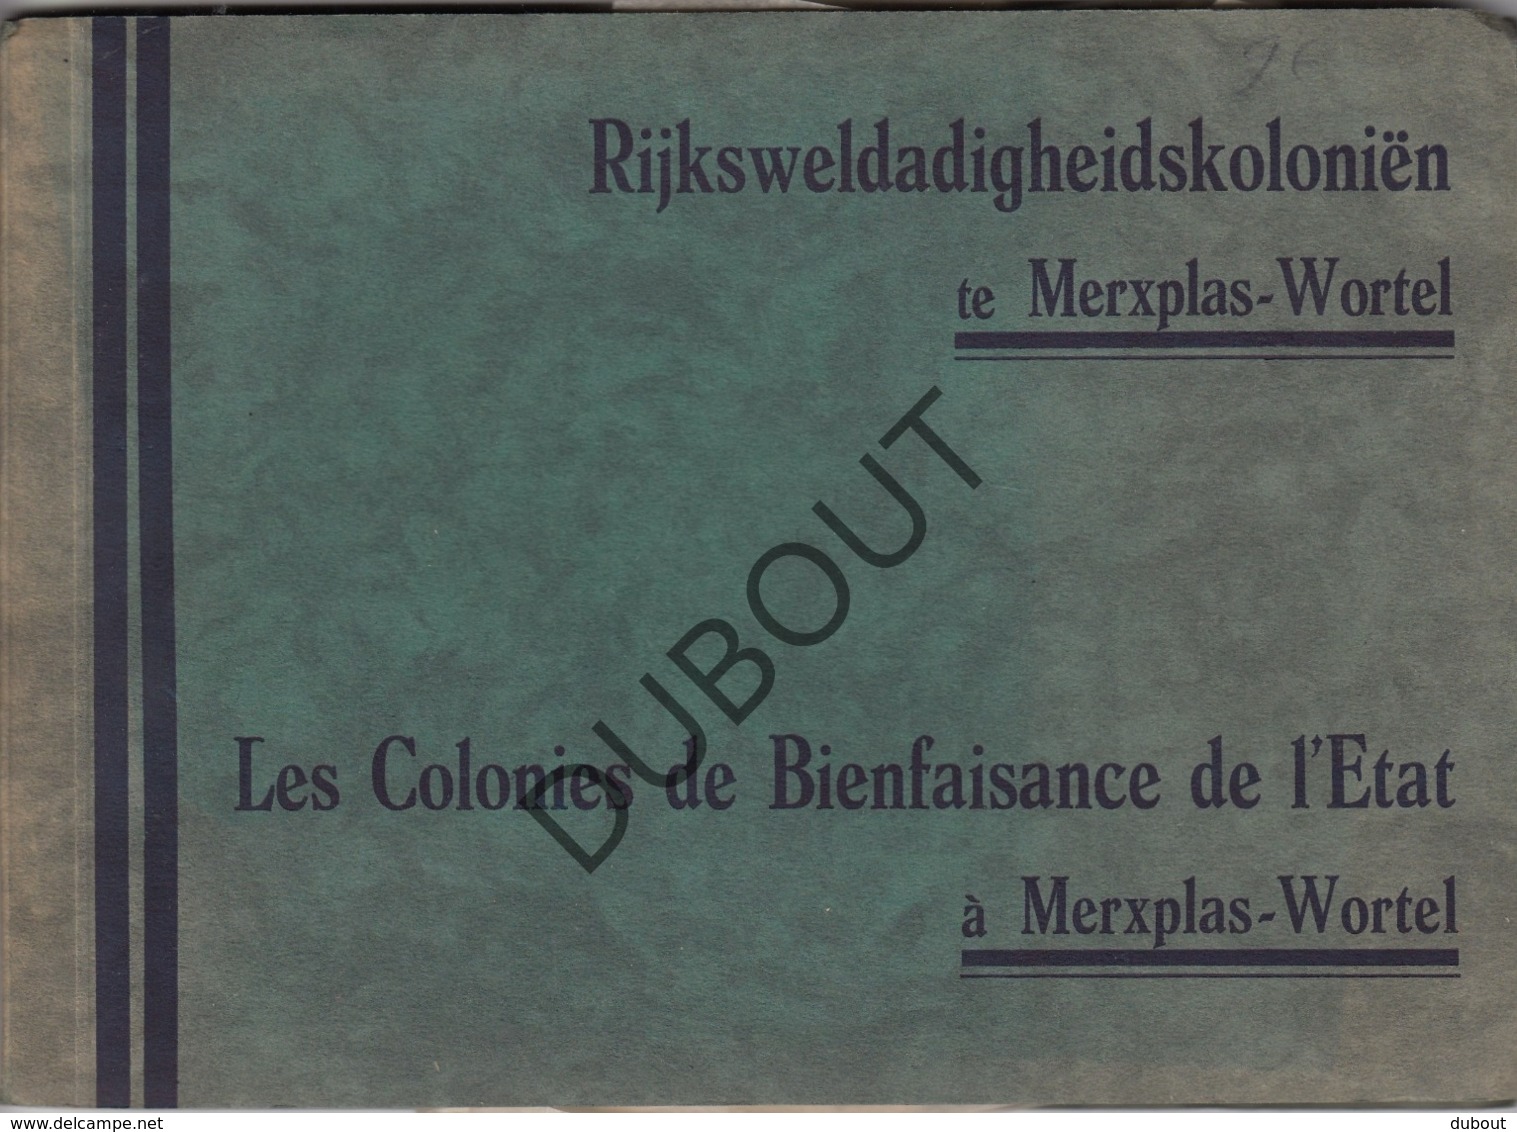 MERKSPLAS/WORTEL Rijksweldadigheidskoloniën (R457) - Antique